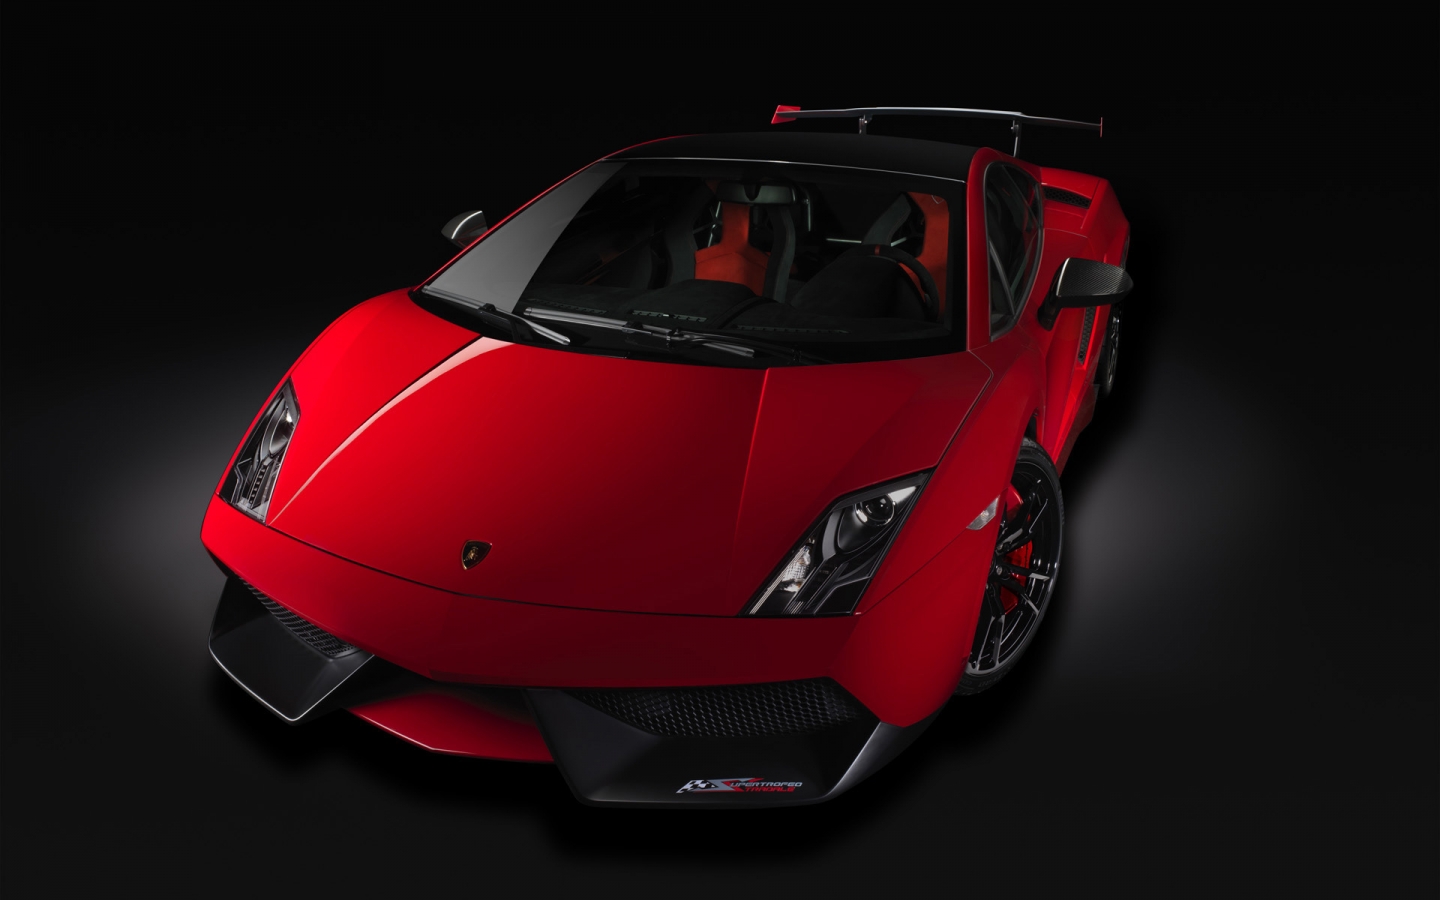 Lamborghini Gallardo Stradale 2012 for 1440 x 900 widescreen resolution